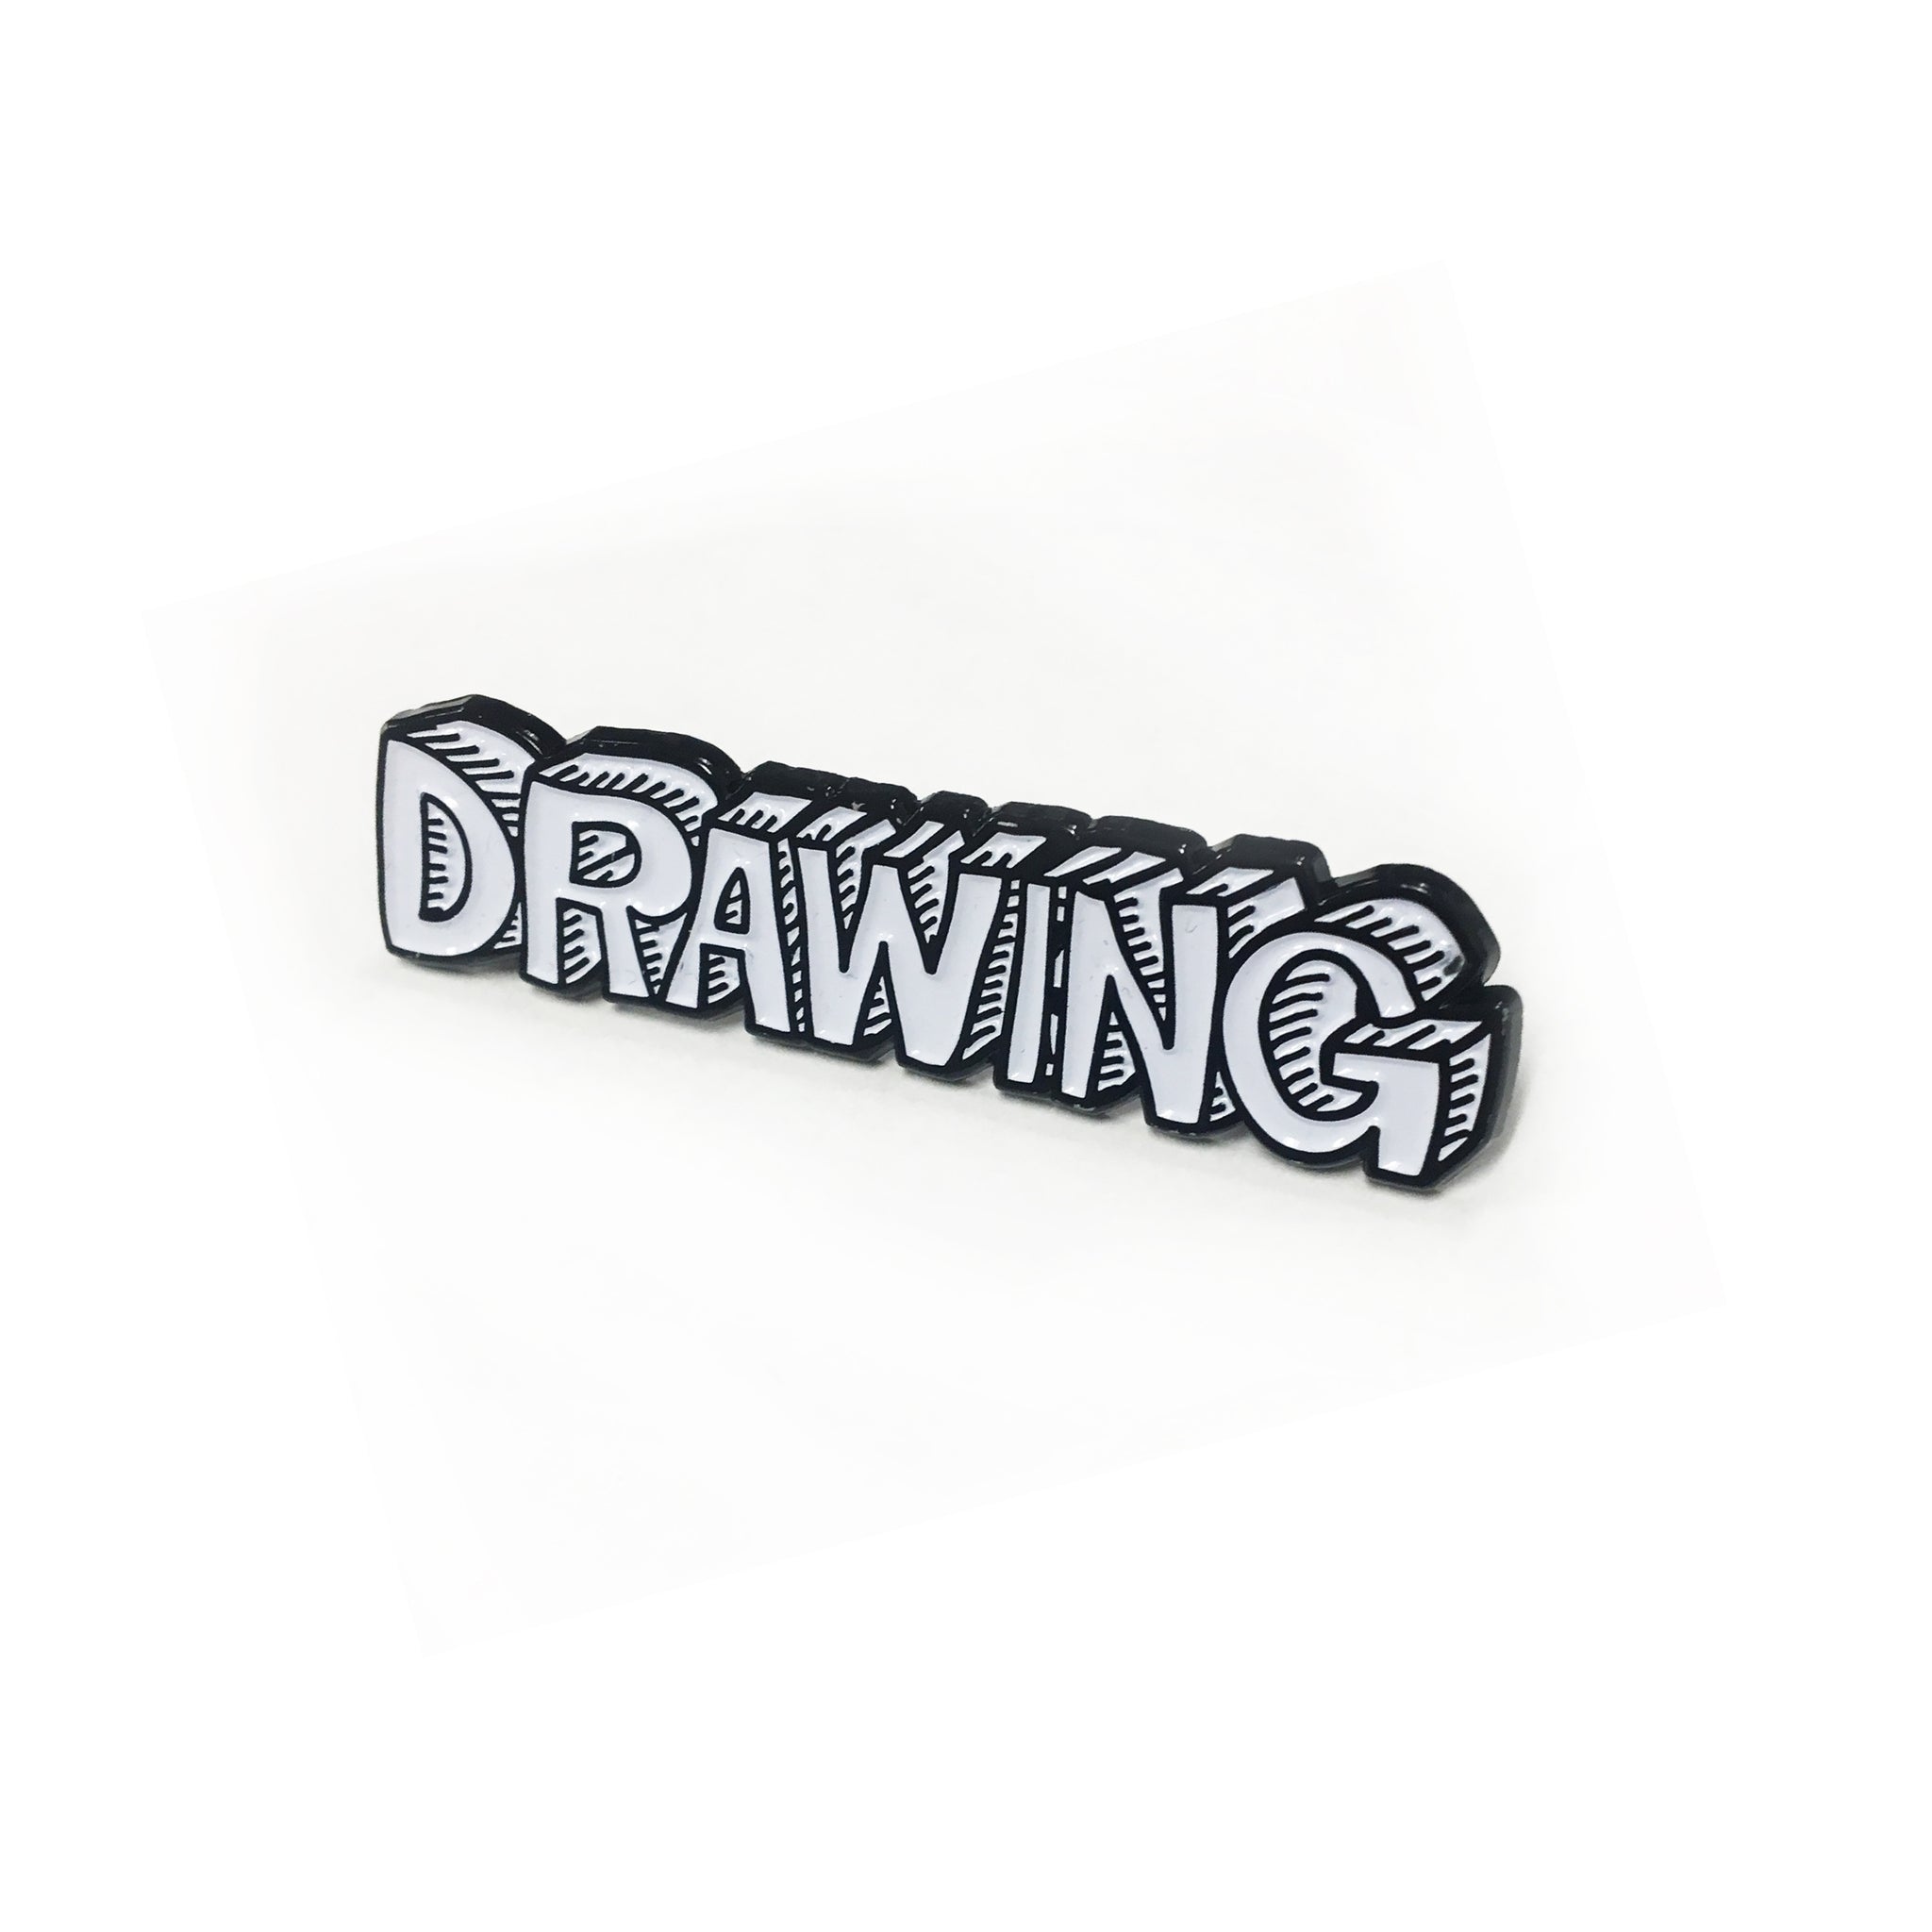 Drawing Pin